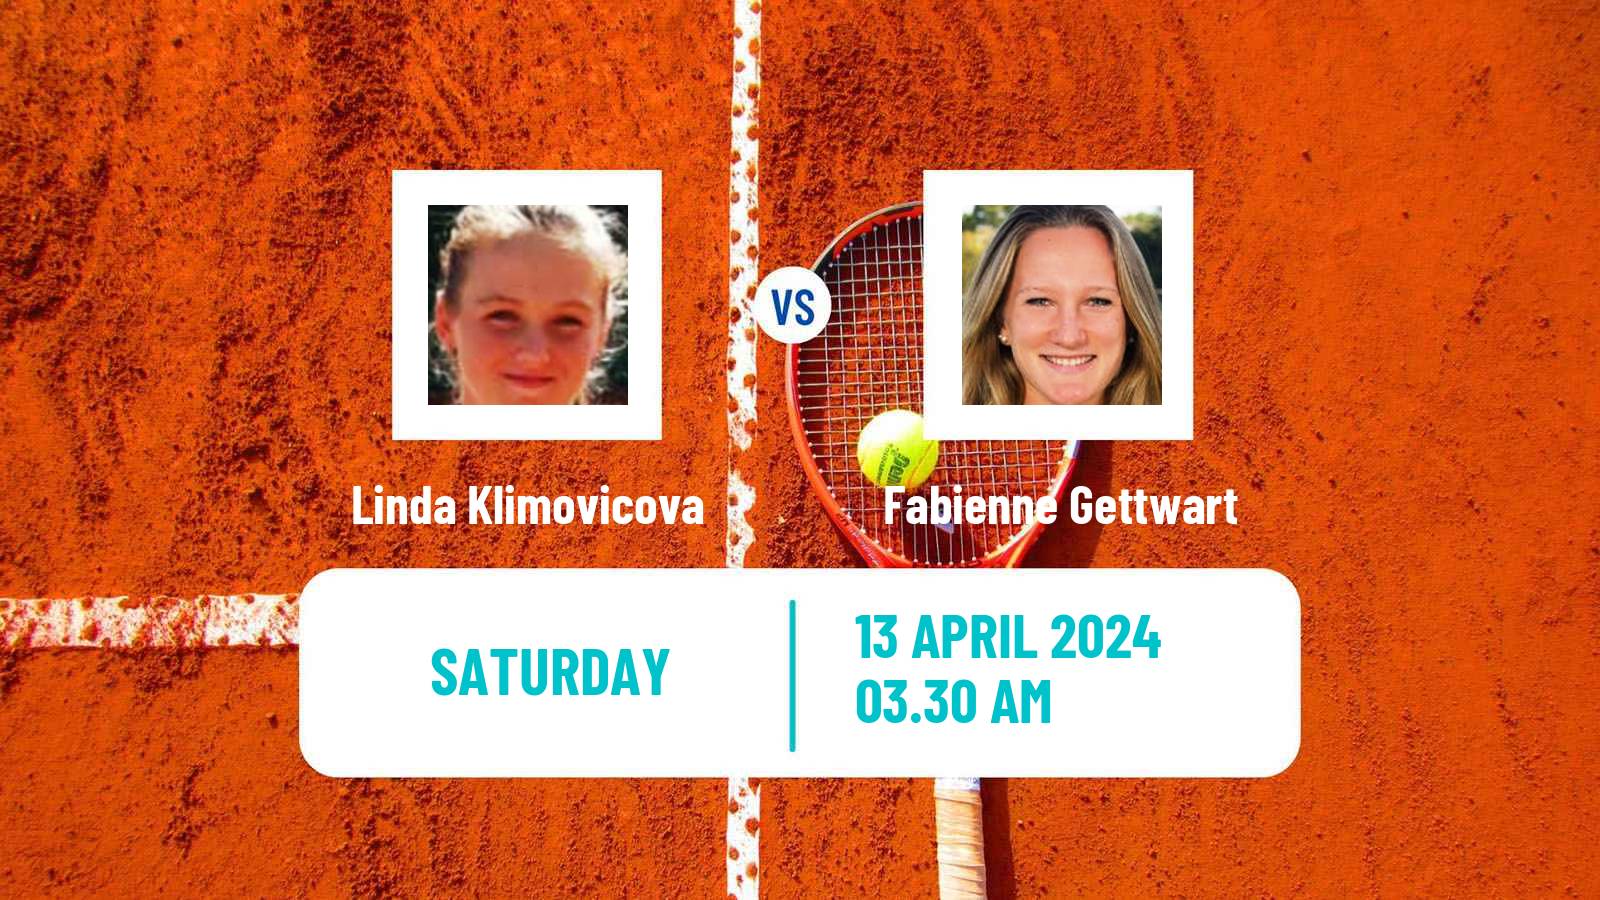 Tennis ITF W35 Sharm Elsheikh 2 Women Linda Klimovicova - Fabienne Gettwart